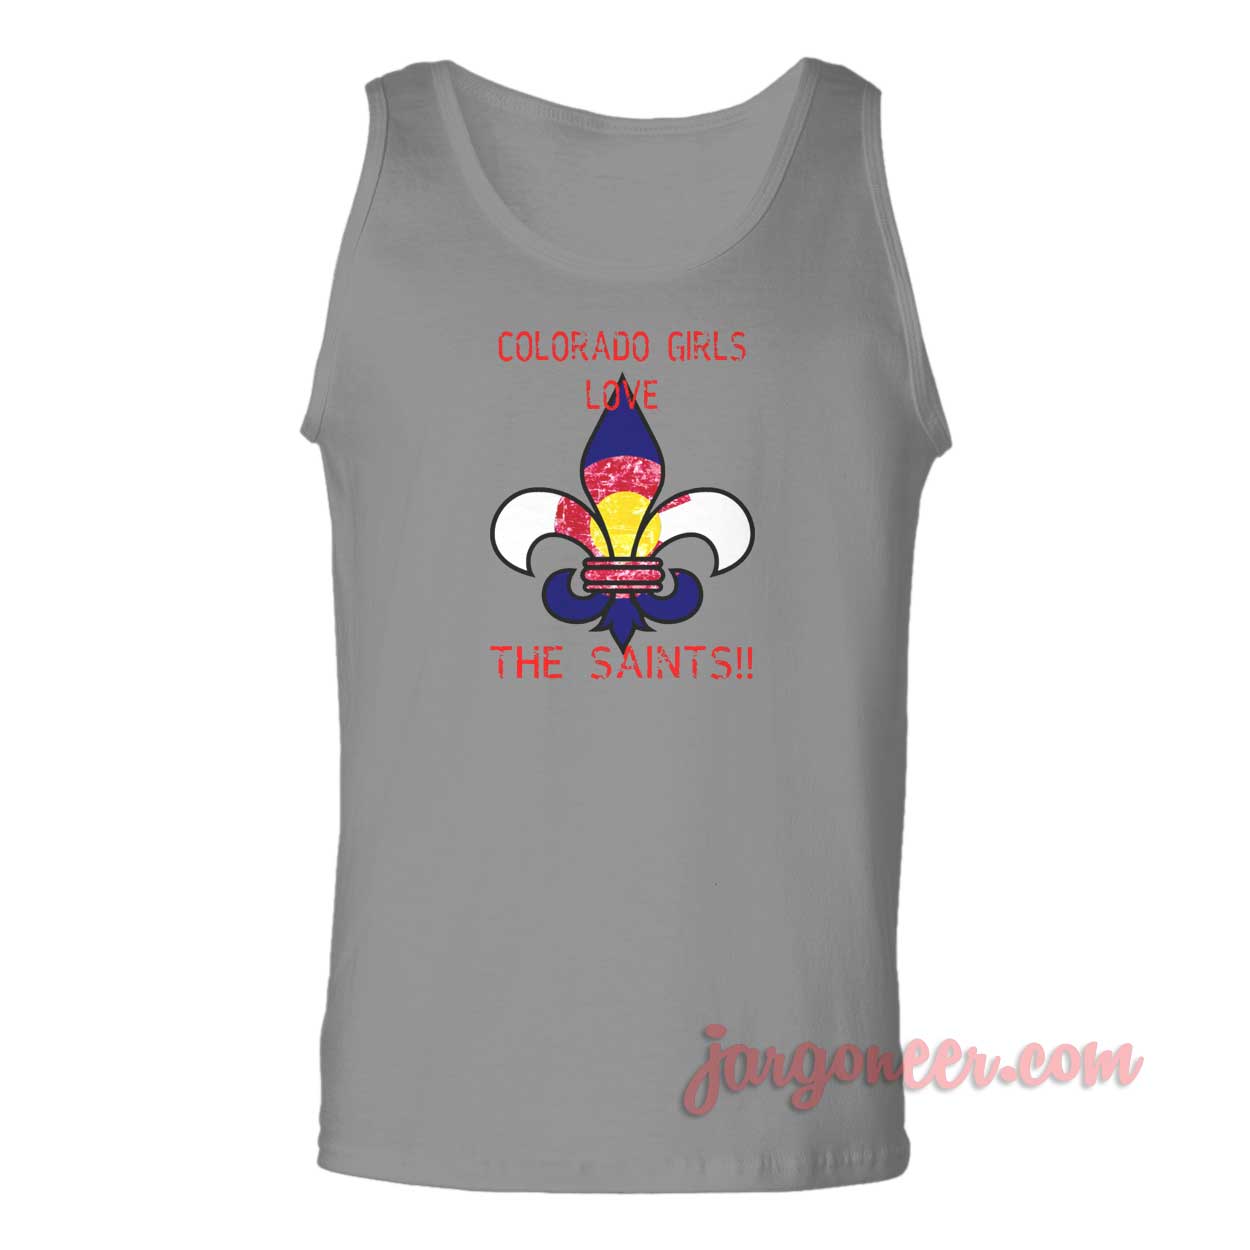 Colorado Girls Love Saints - Shop Unique Graphic Cool Shirt Designs